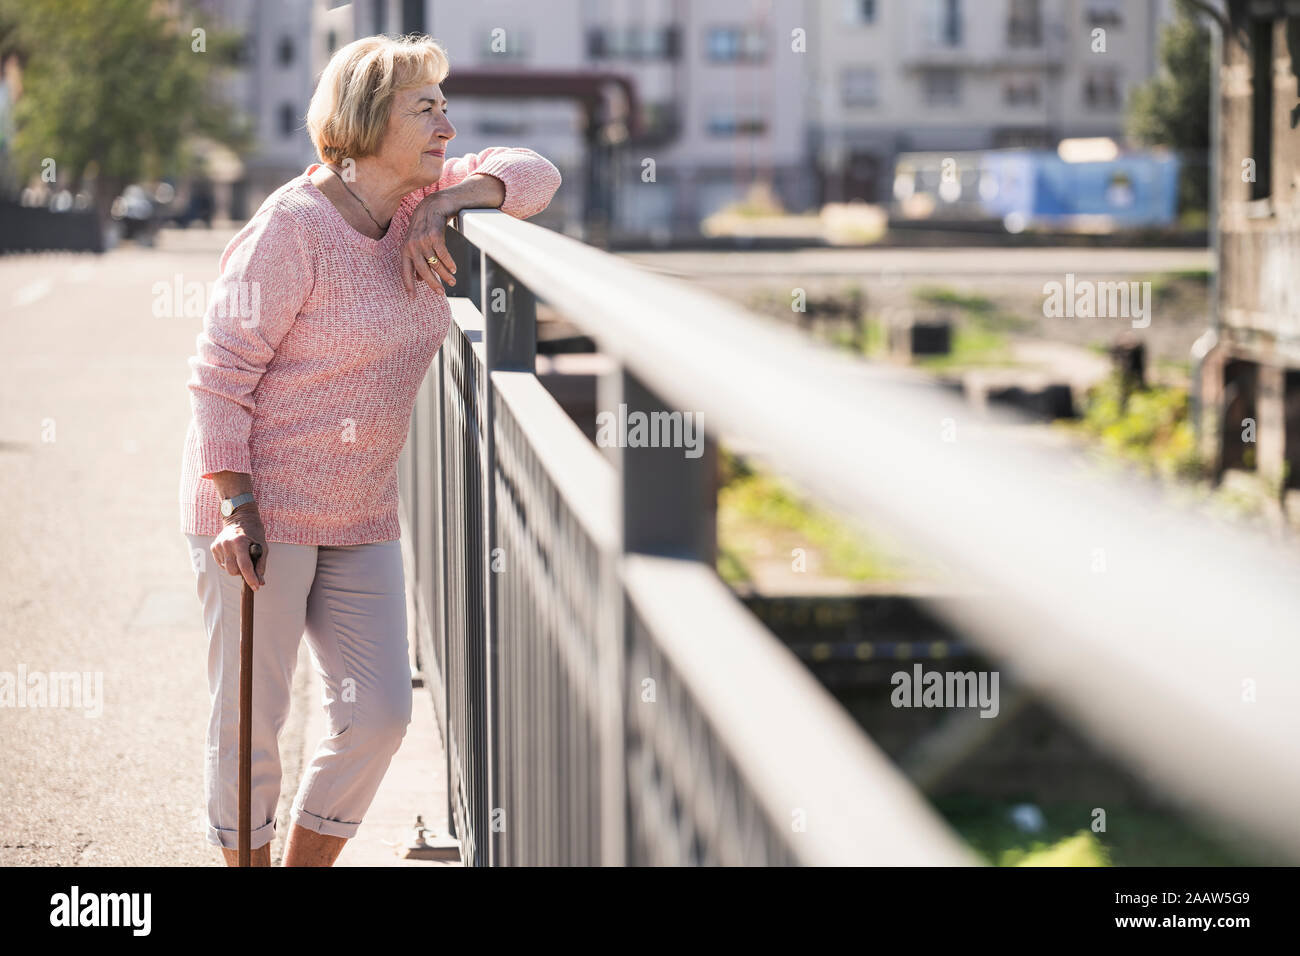 Senior woman walking on footbridge, using walking stick Stock Photo